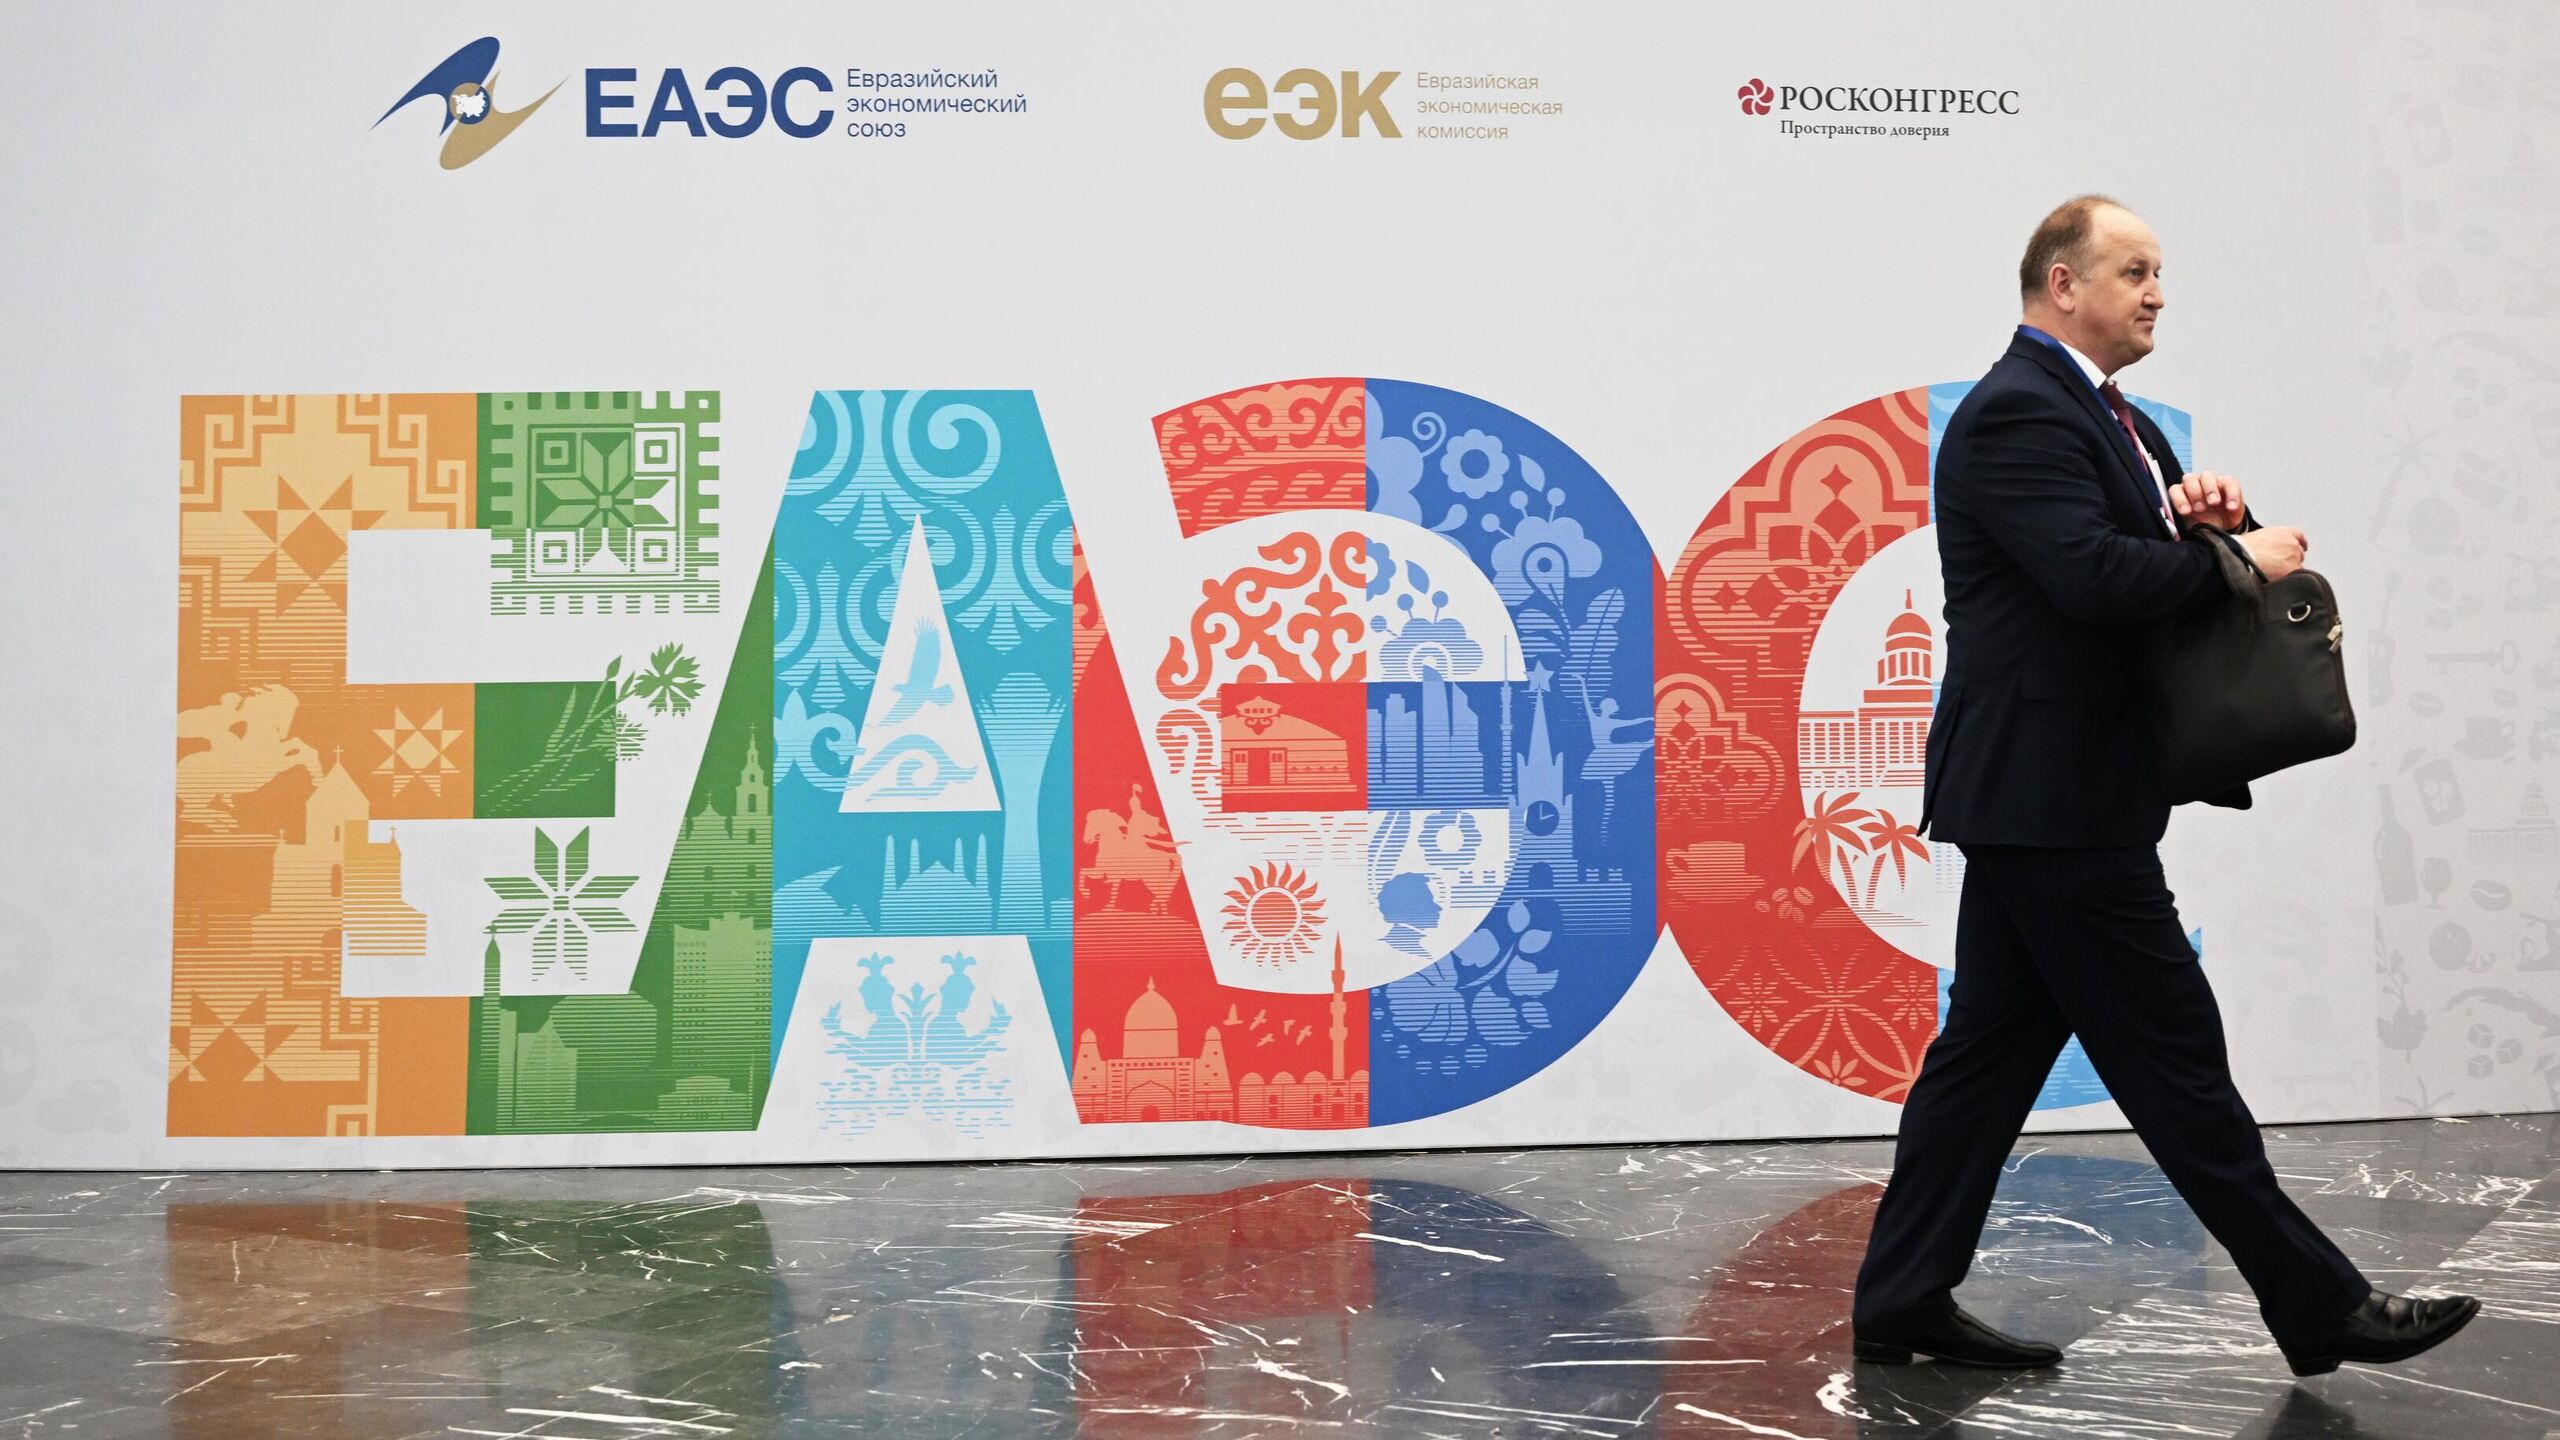 Евразийский экономический форум. ЕАЭС логотип. Евразийский экономический Союз (ЕАЭС). Евразийский экономический Союз (ЕВРАЗЭС).